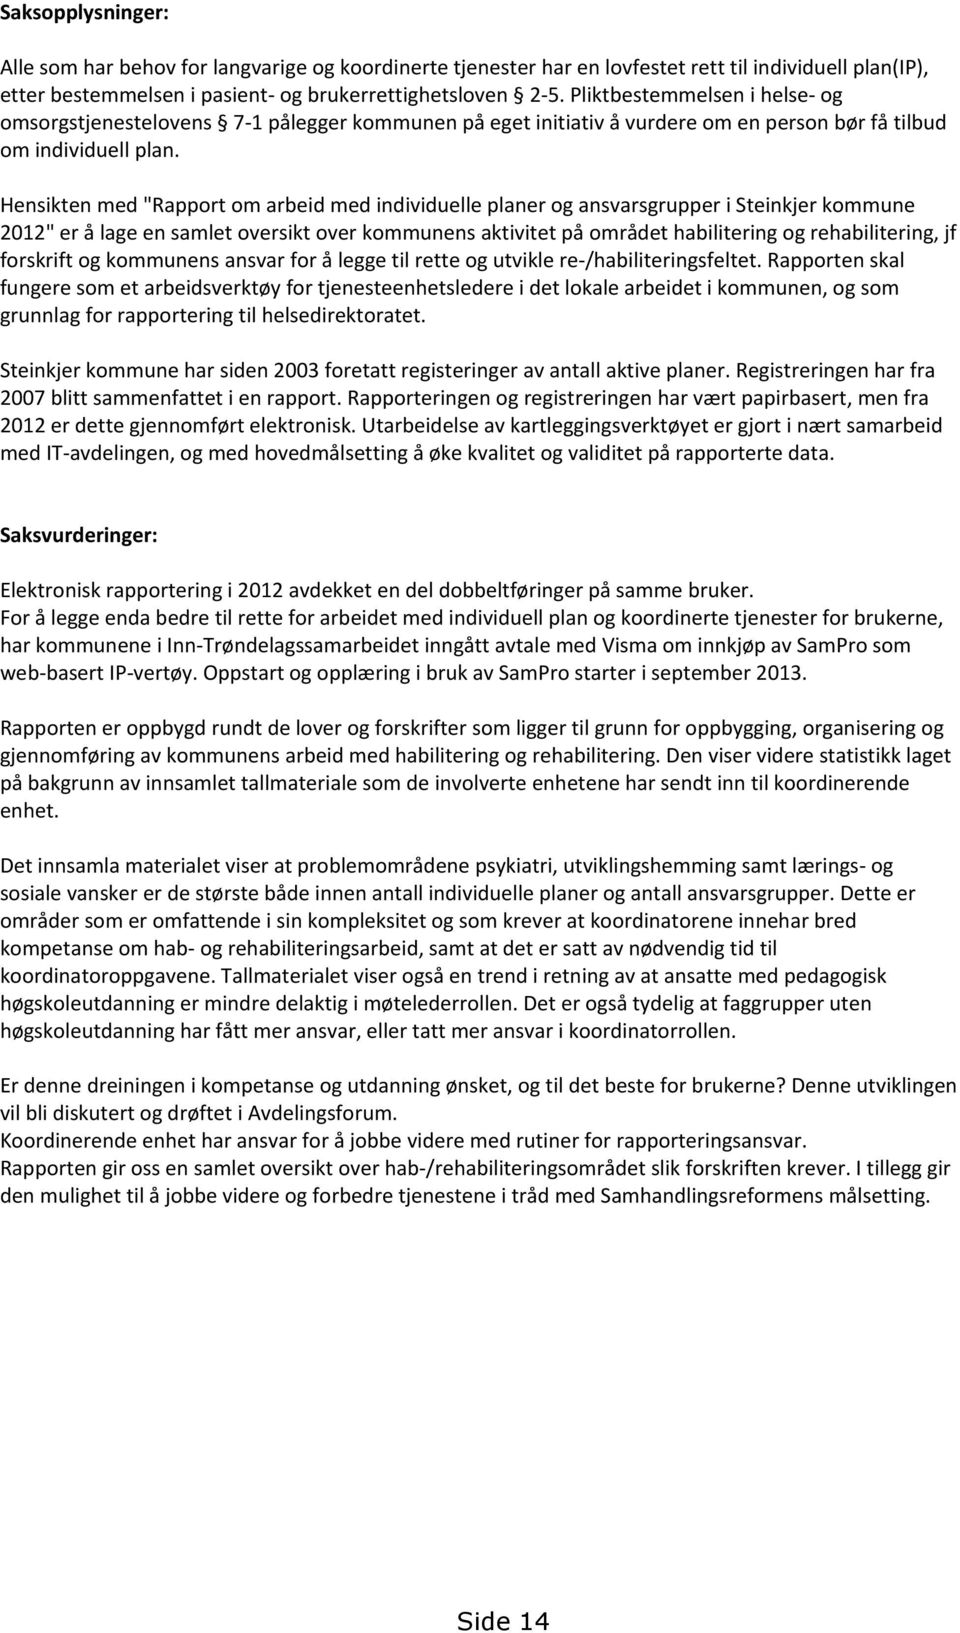 Hensikten med "Rapport om arbeid med individuelle planer og ansvarsgrupper i Steinkjer kommune 2012" er å lage en samlet oversikt over kommunens aktivitet på området habilitering og rehabilitering,